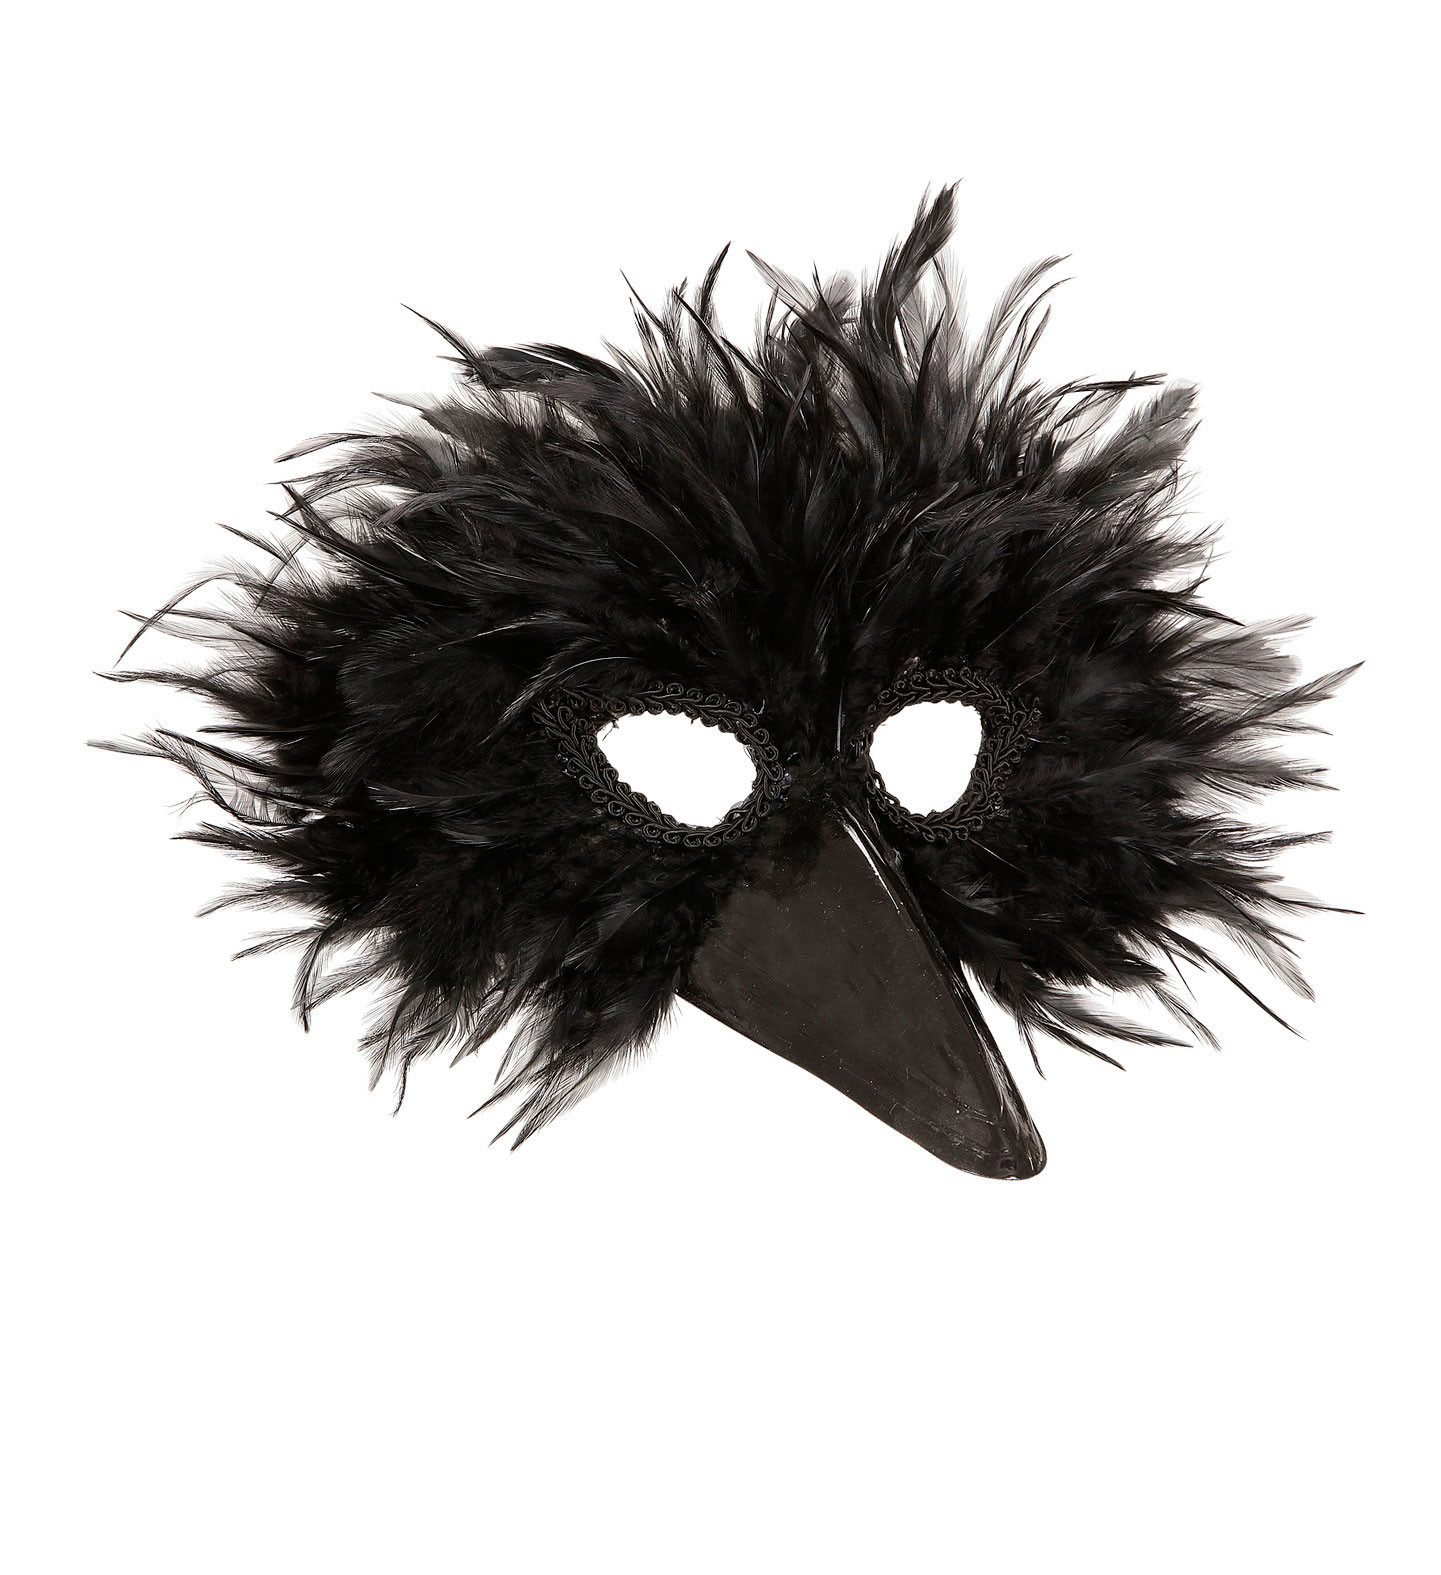 Маска bird. Костюм вороны. Маска птицы карнавальная. Шапка маска ворона. Карнавальная маска ворона.